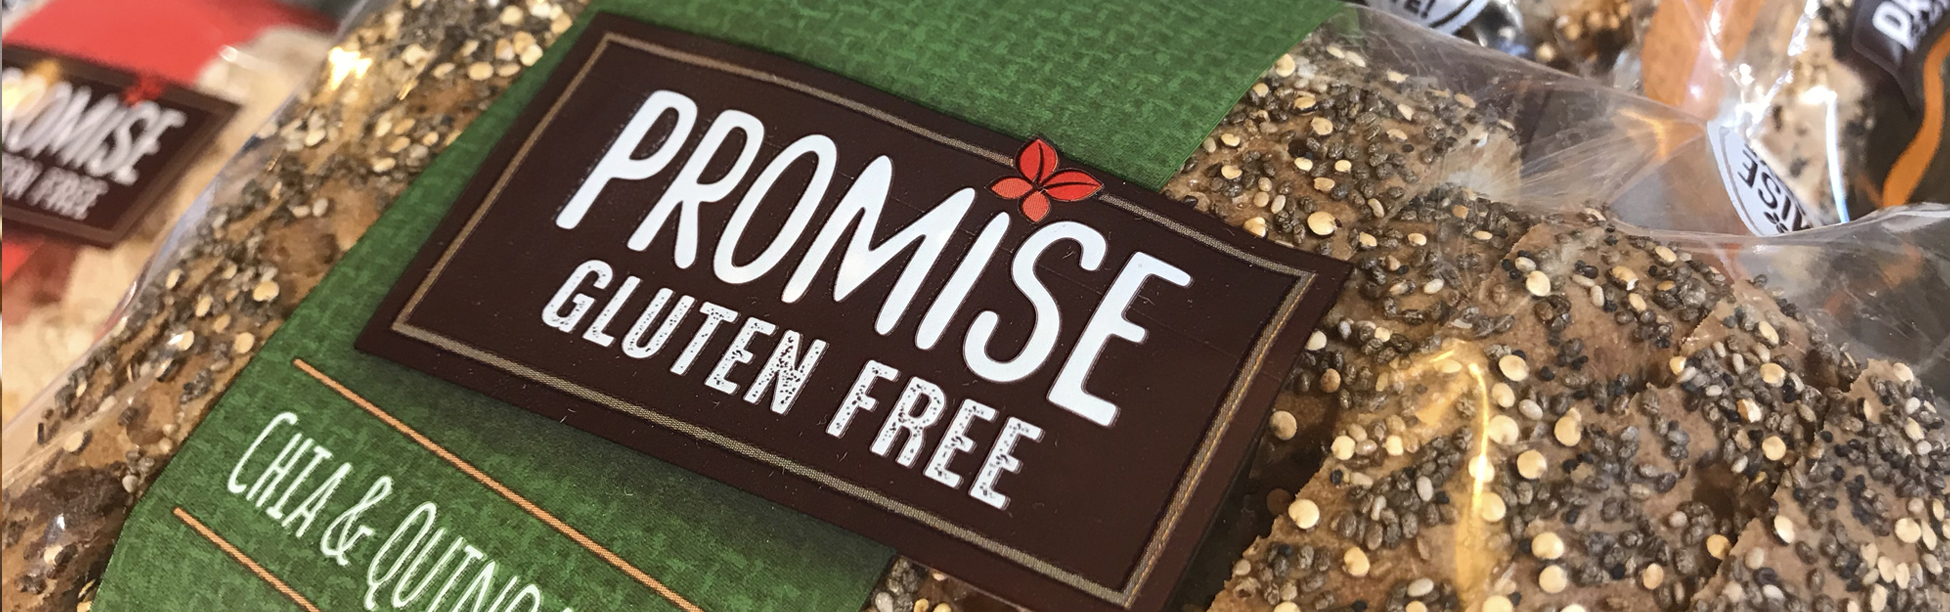 Promise Gluten Free